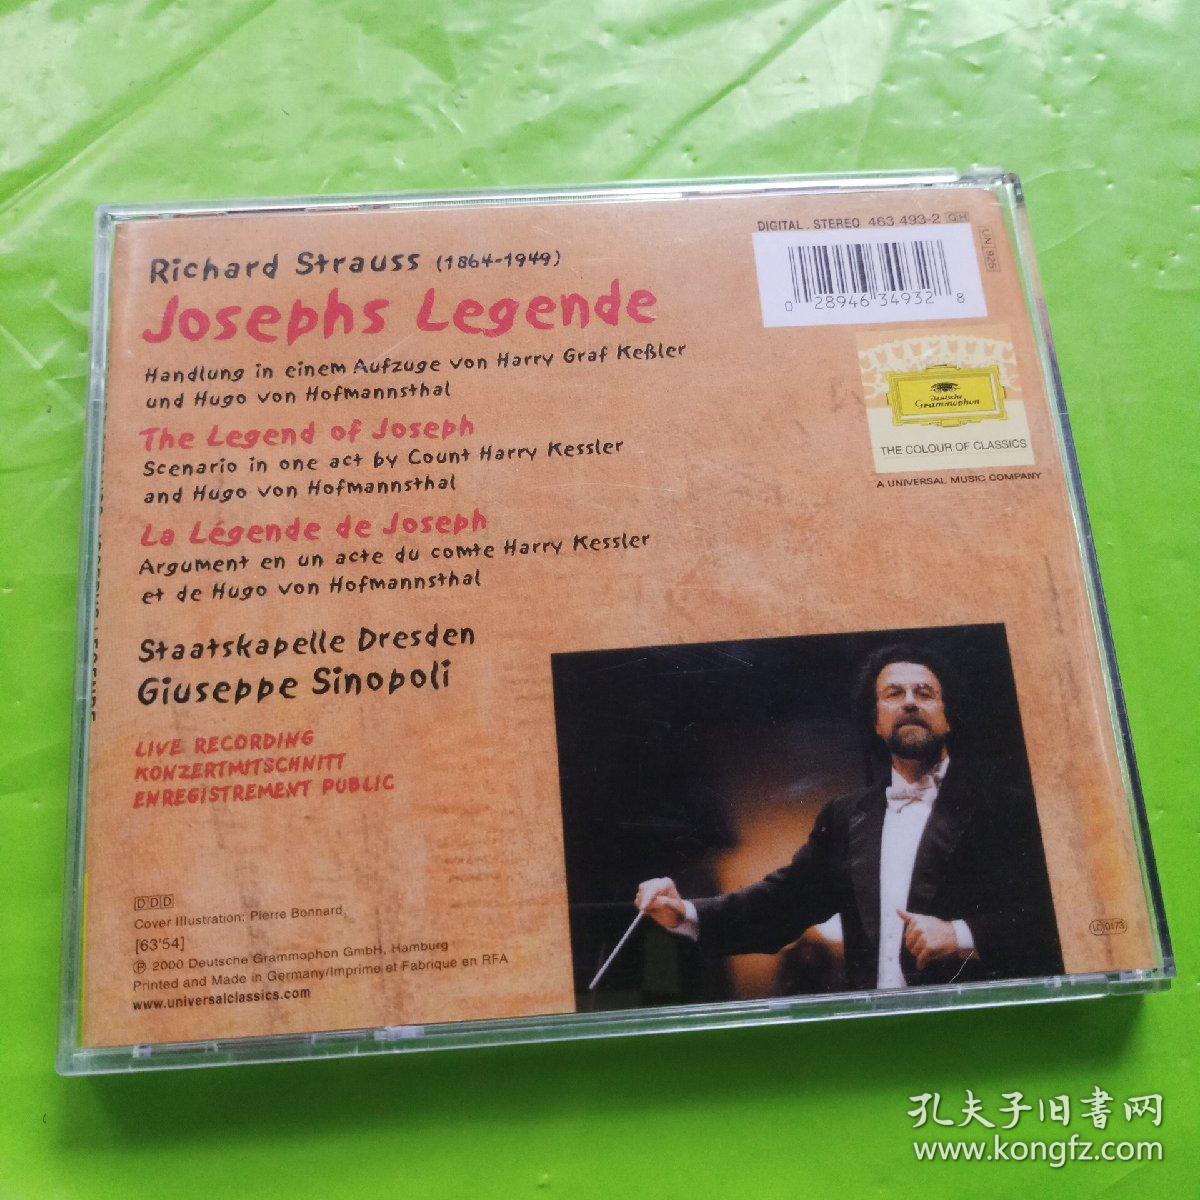 Richard Strauss  JosepHs Legende CD